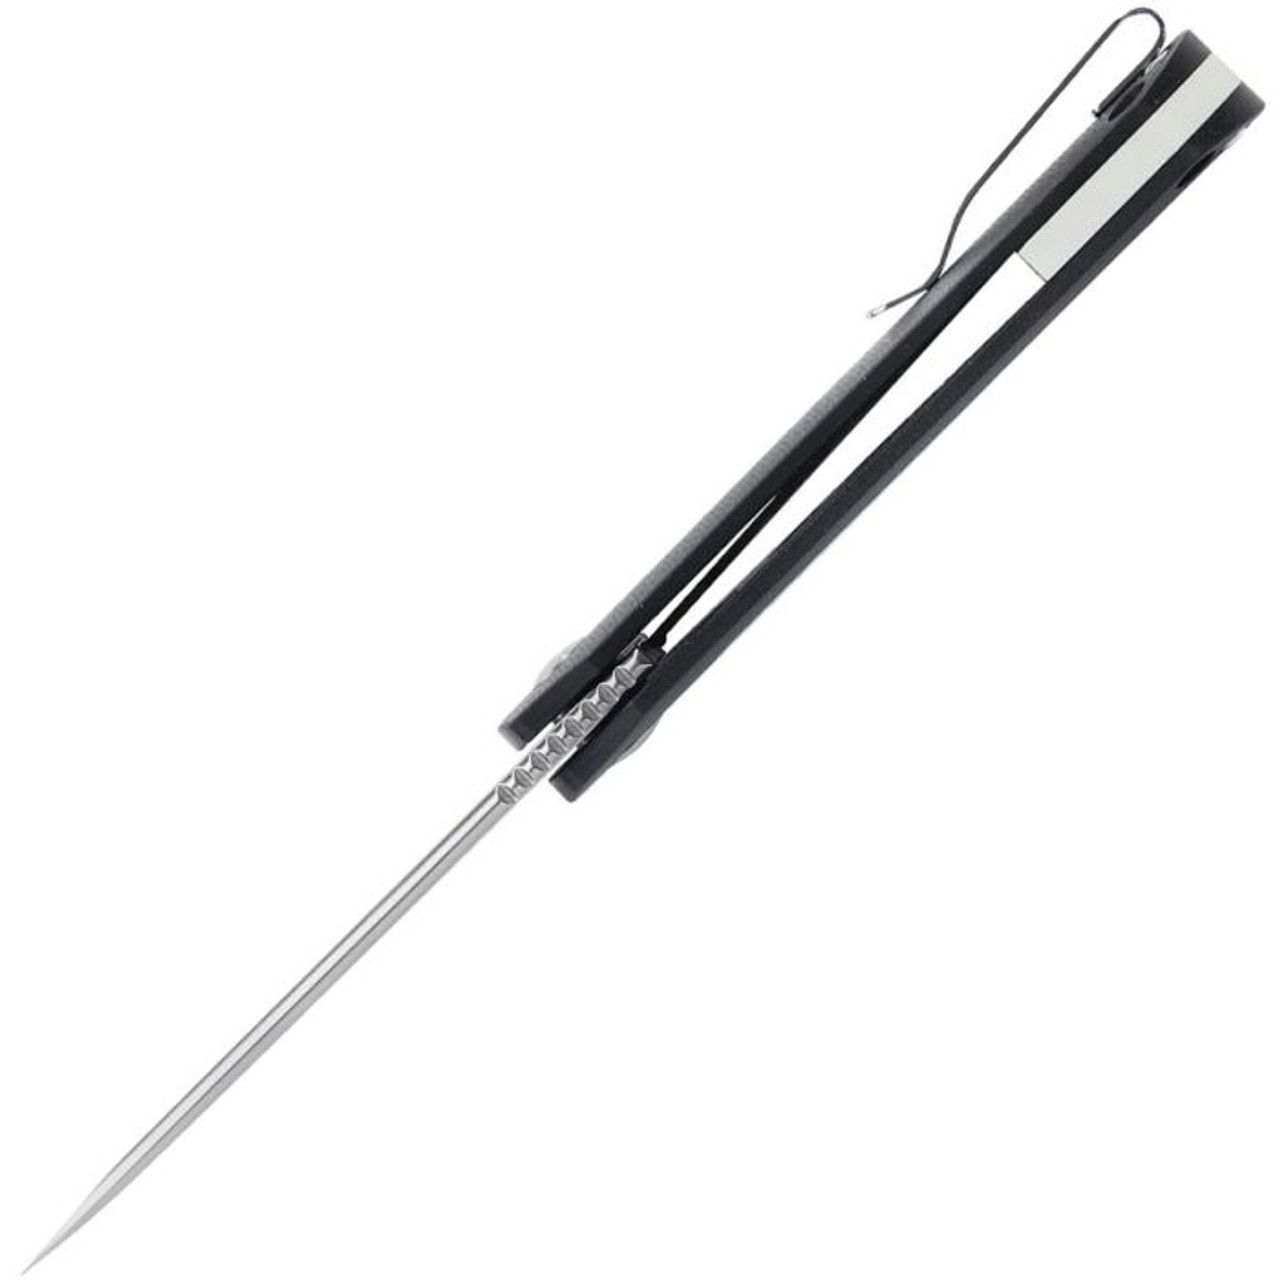 Kizer Cutlery Latt Vind Mini (KIV3567N1) 3" Bohler N690 Satin Spear Point Plain Blade, Black and White G-10 Handle